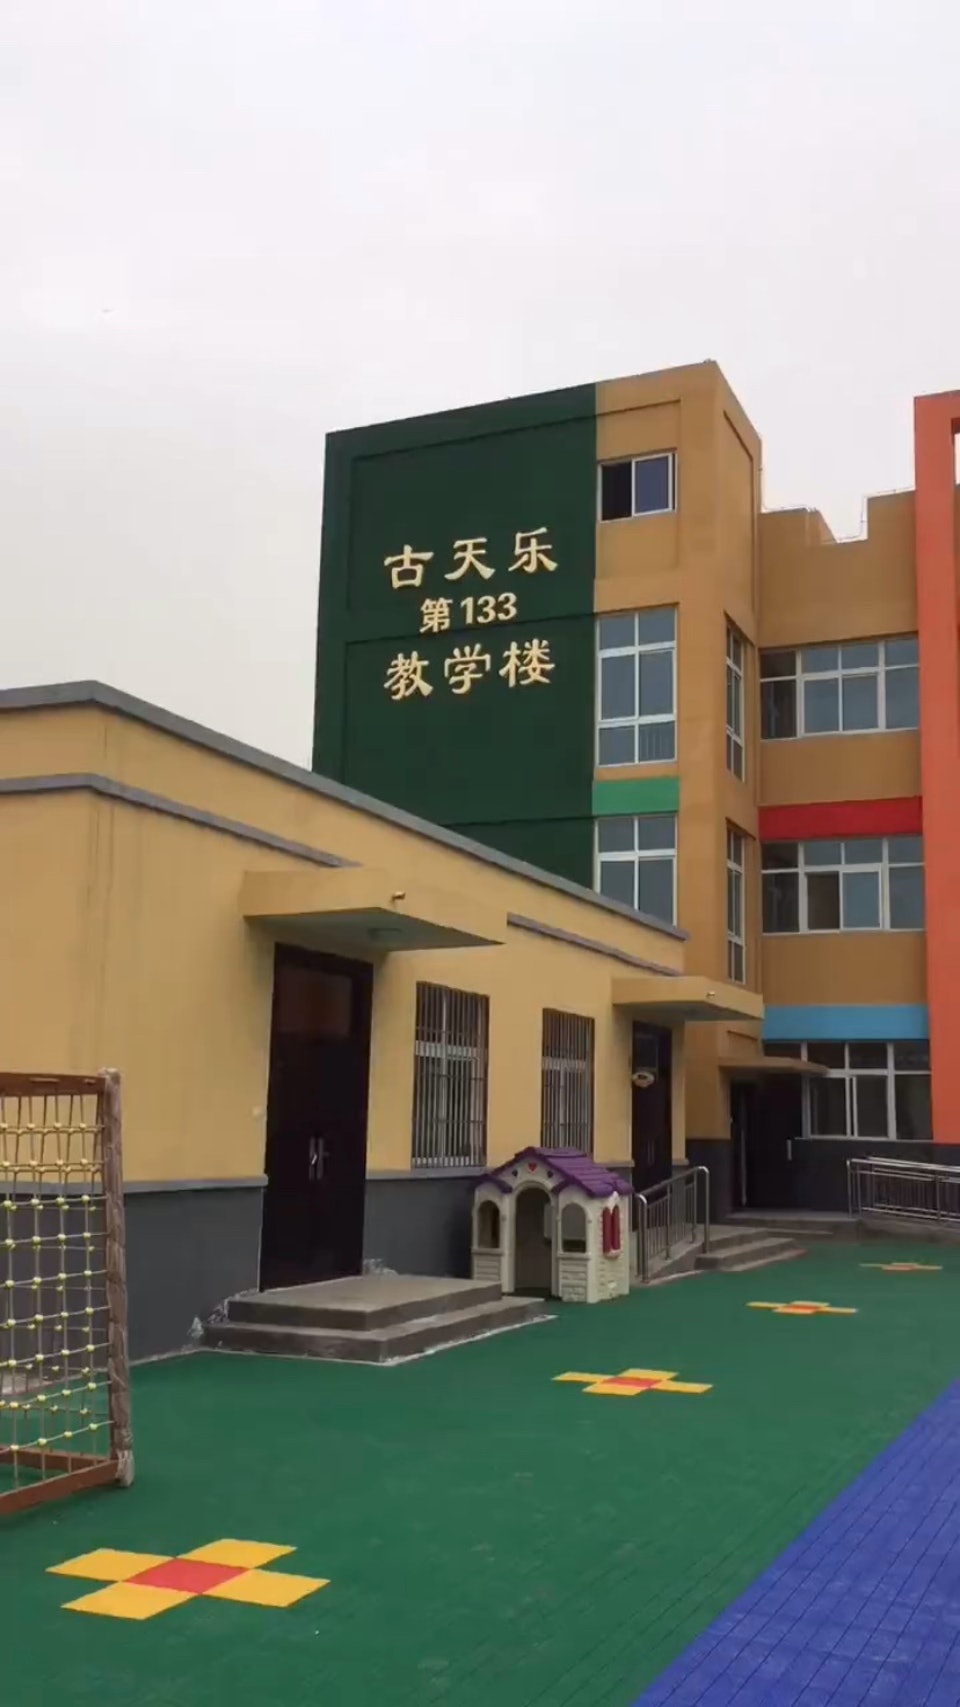 古天乐已经在中国兴建过百间希望学校。